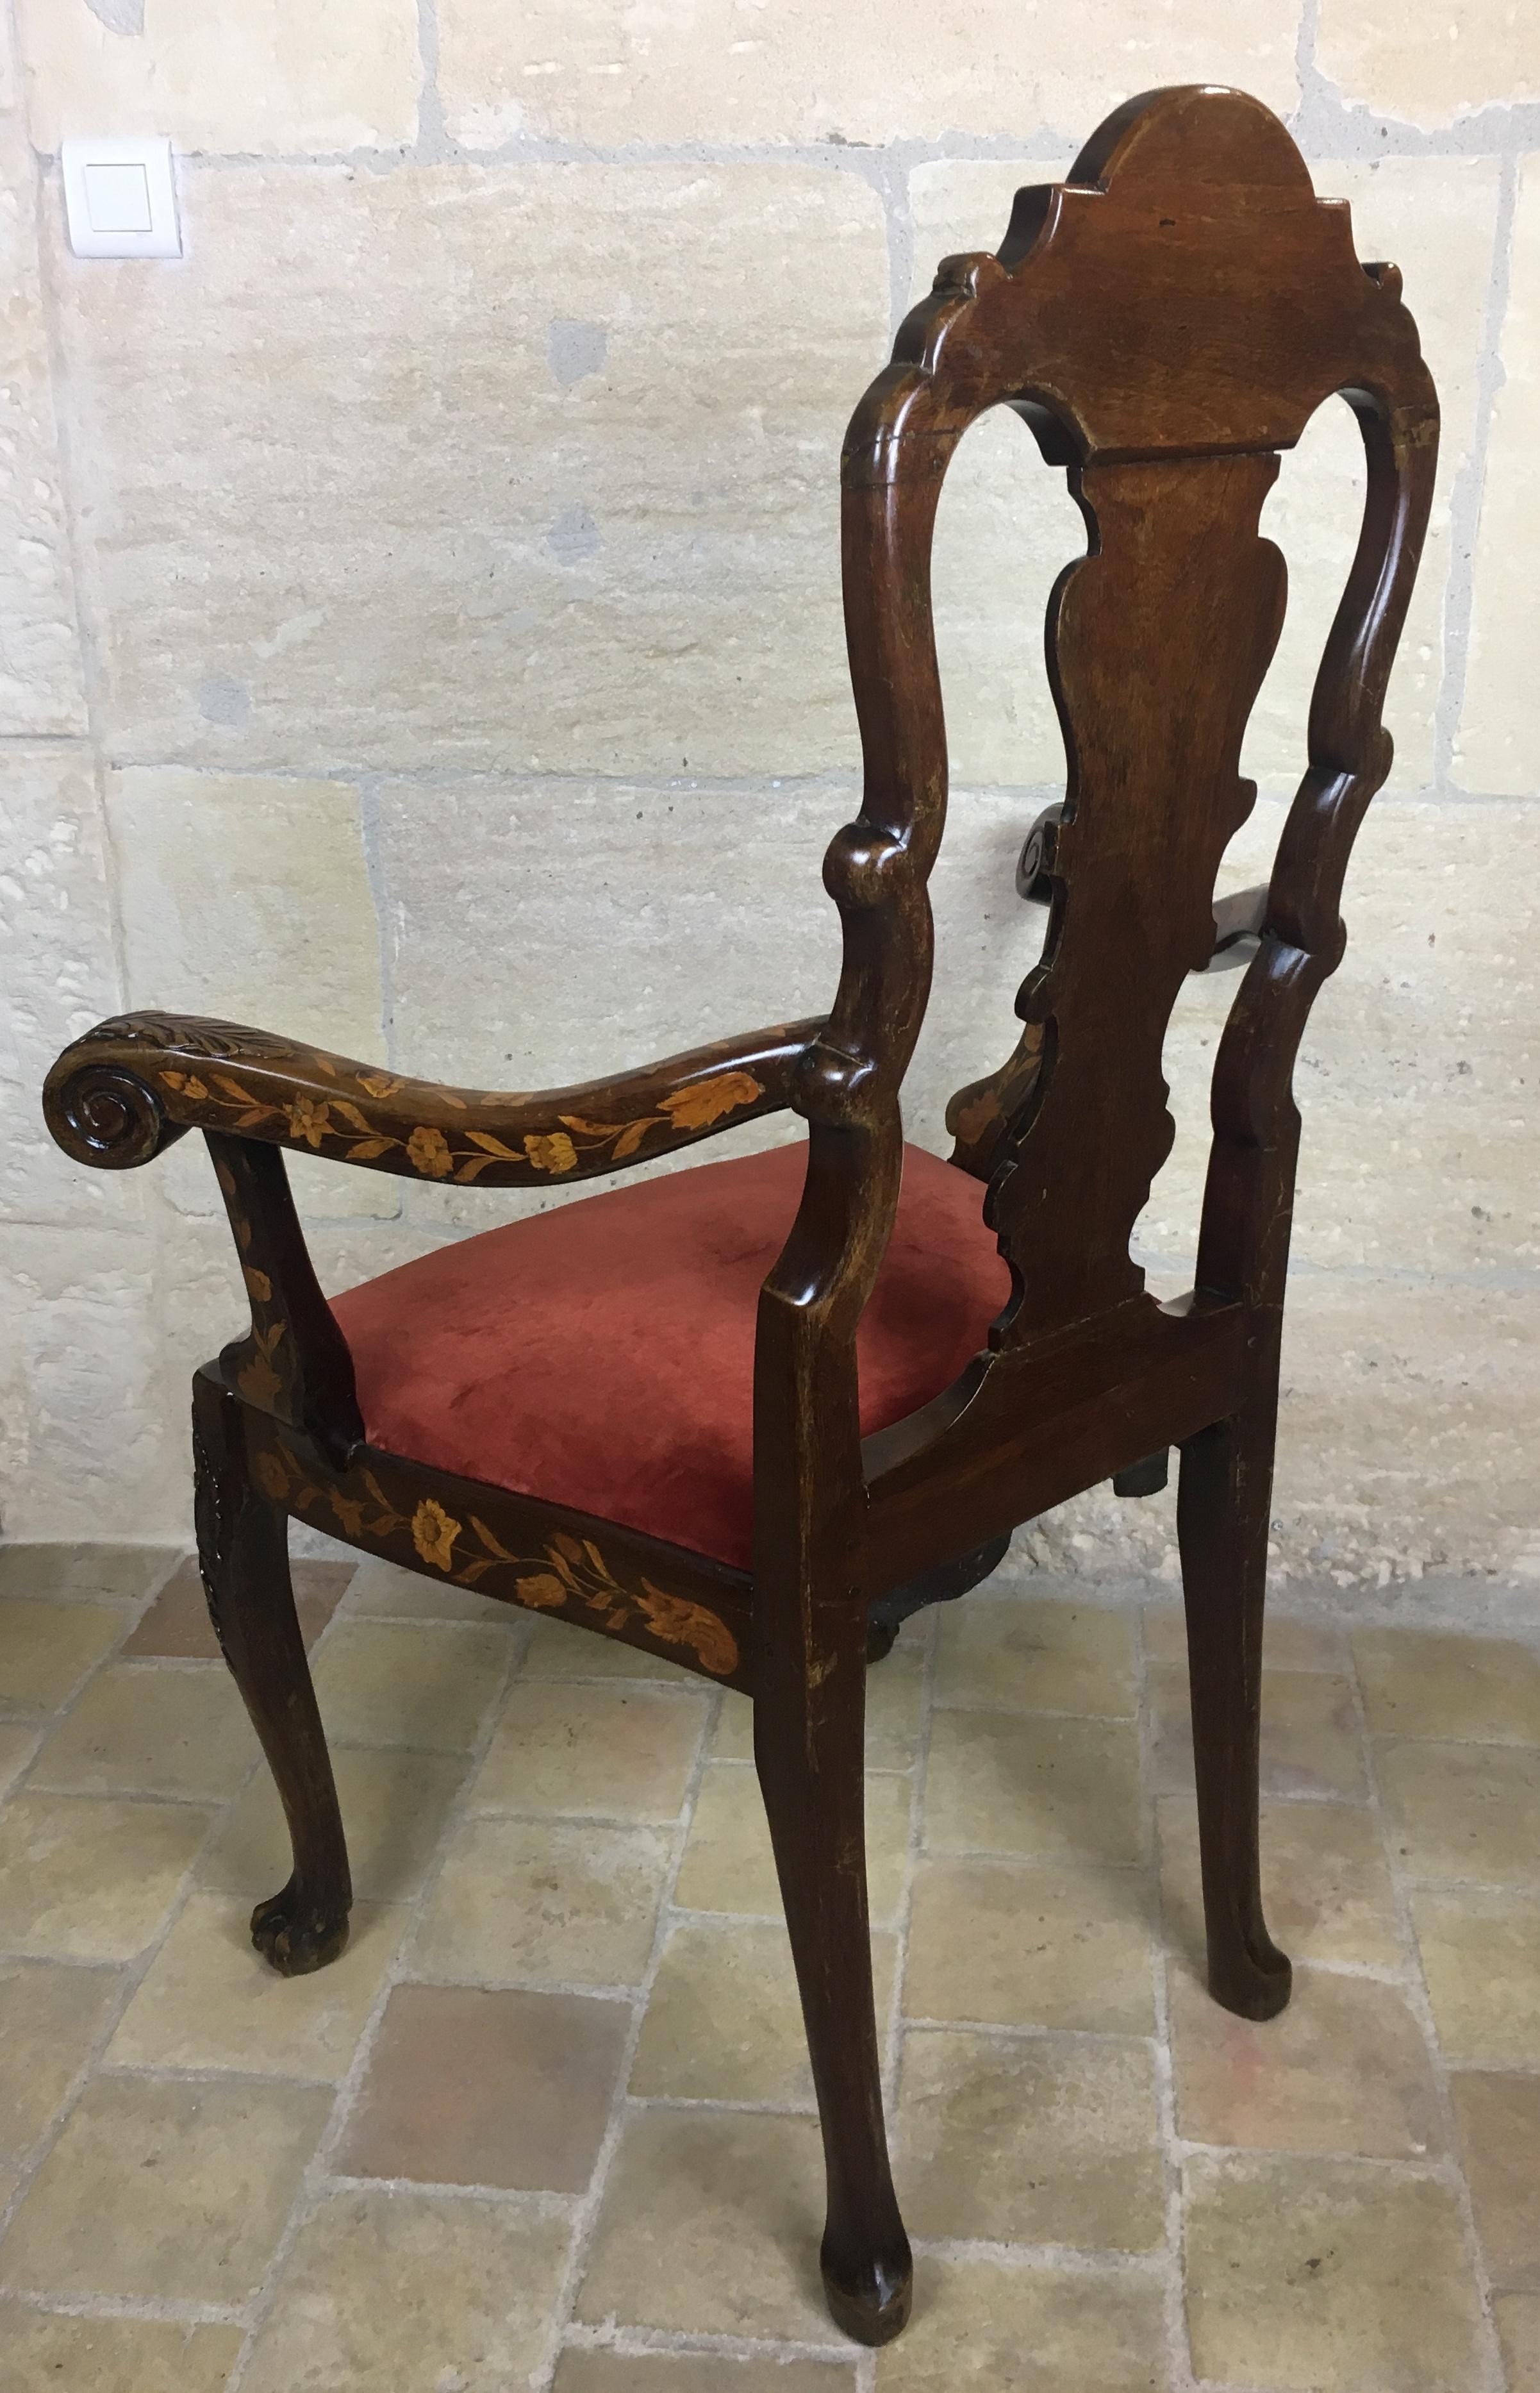 Niederländischer Sessel aus Nussbaum und Palisanderholz aus dem 18. Jahrhundert, außergewöhnliche Intarsienarbeit und Schnitzerei (Handgeschnitzt)